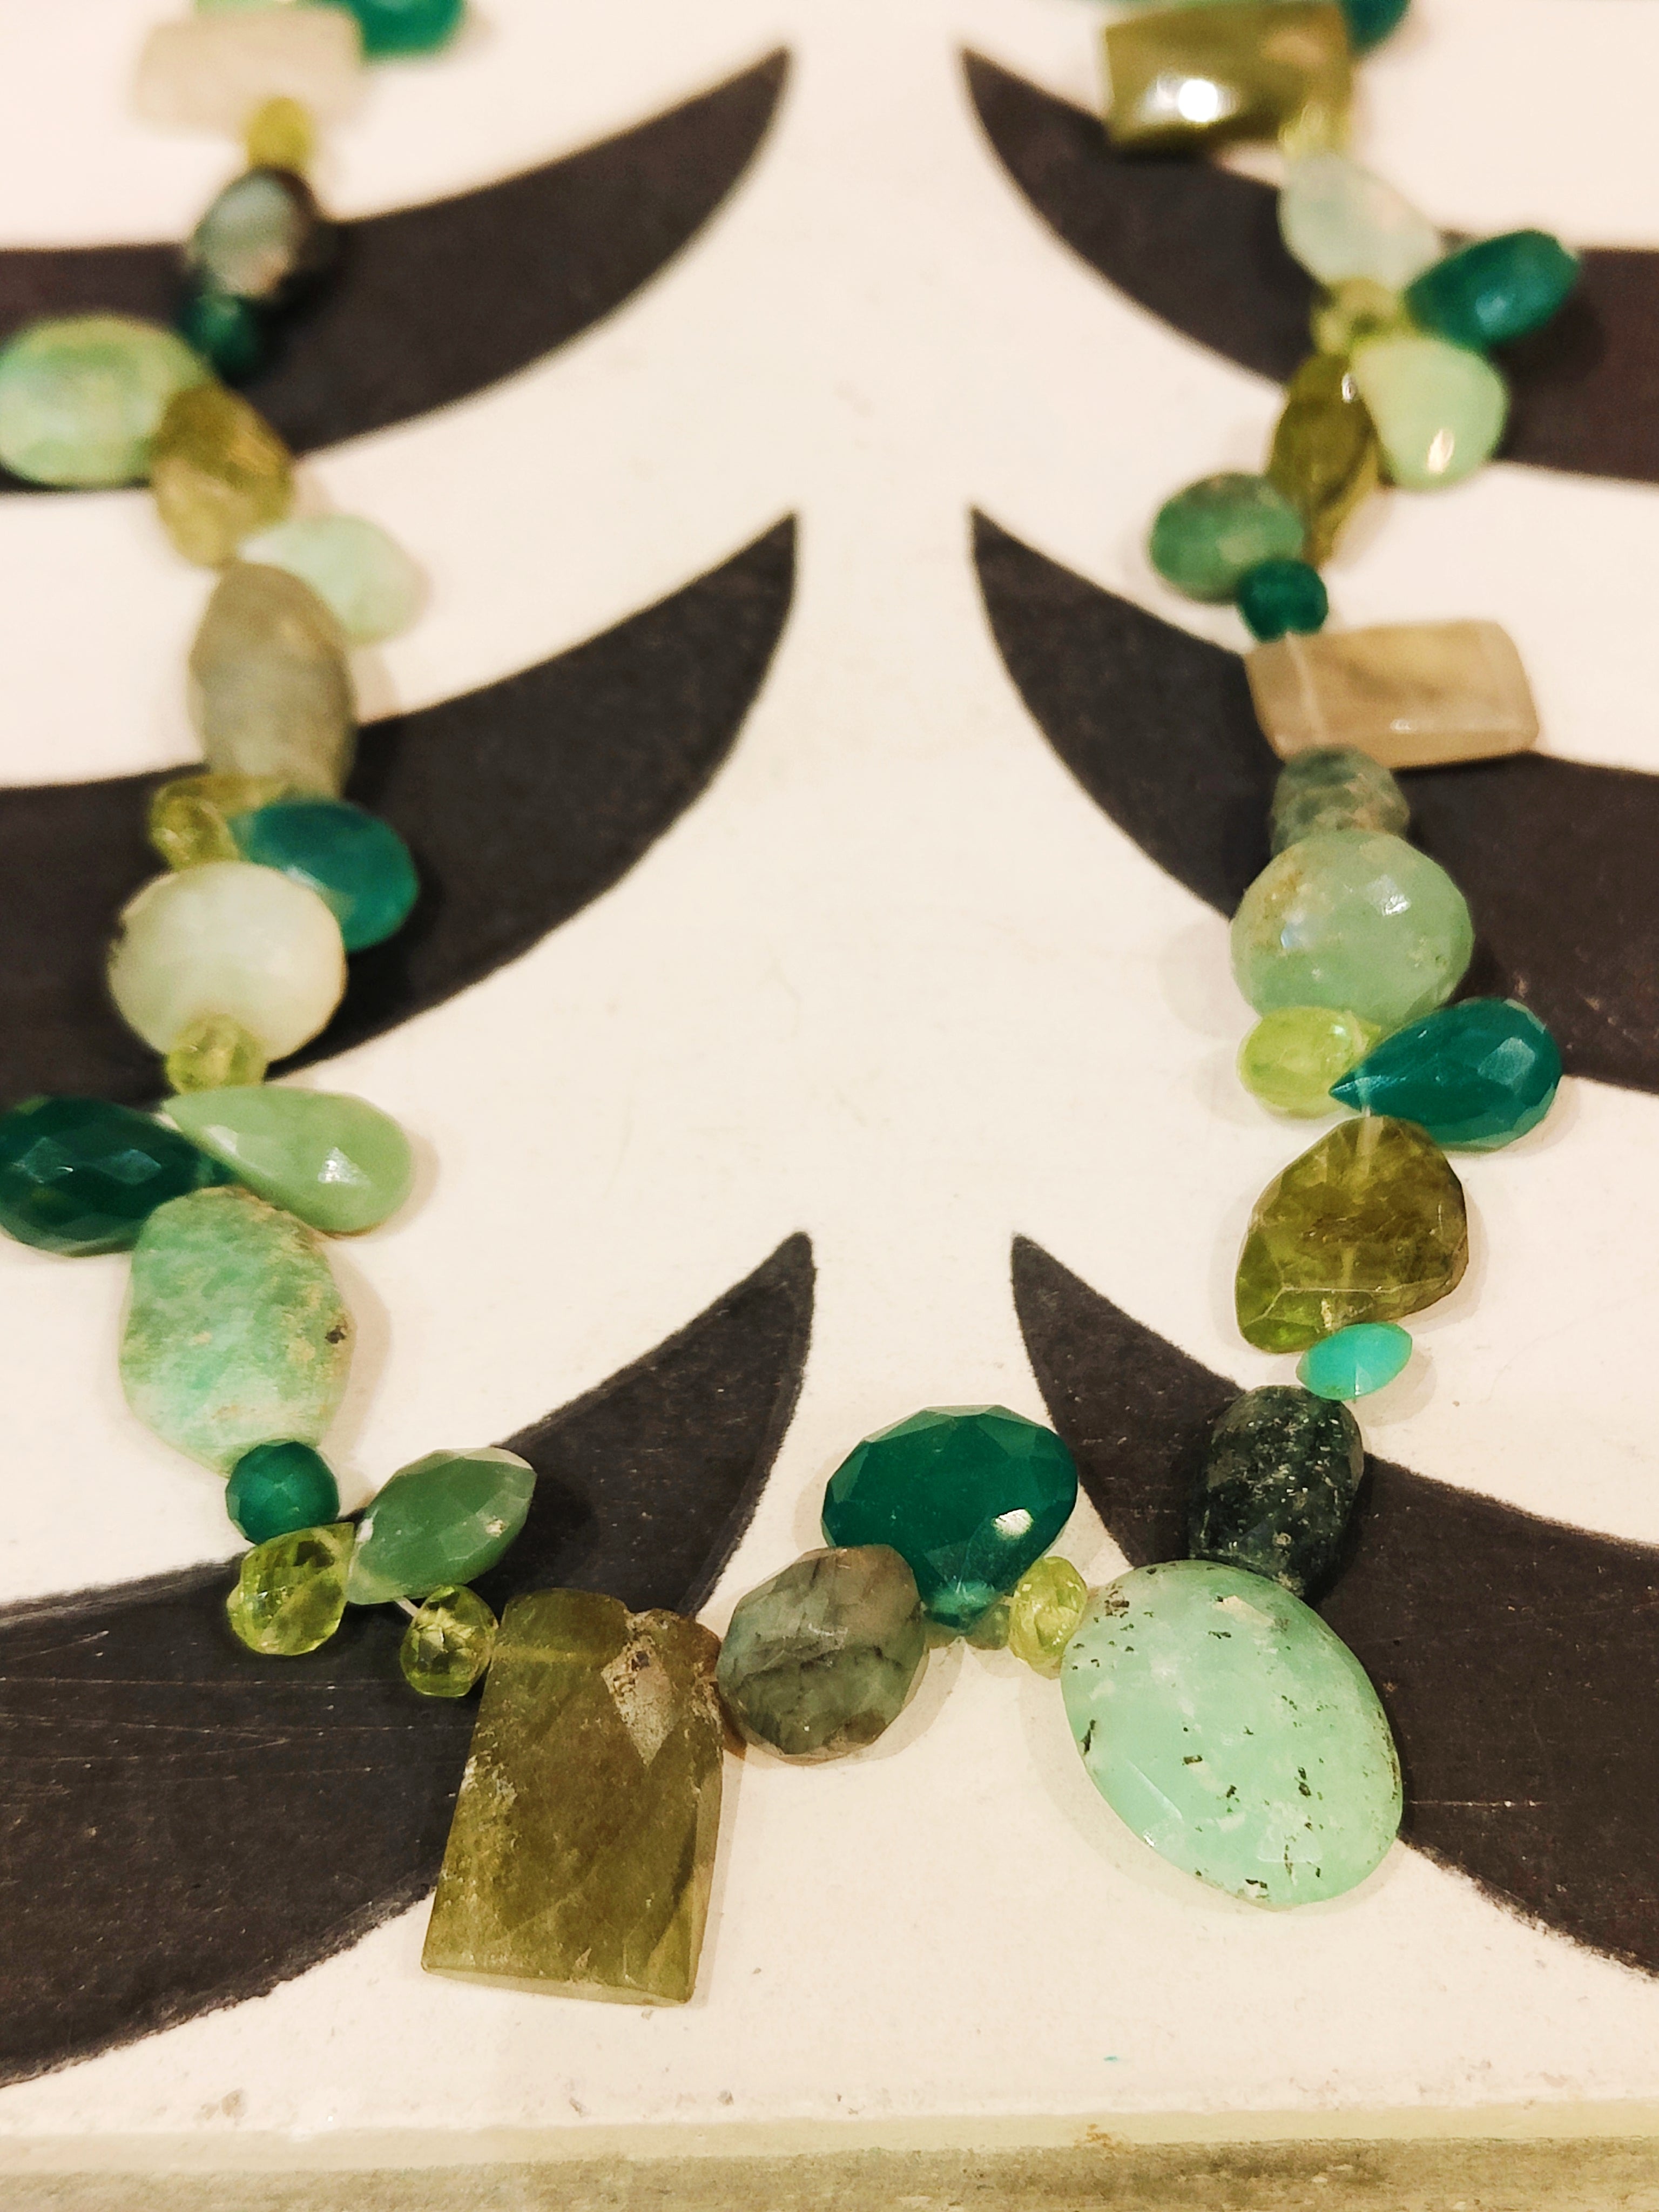 Precious greens necklaces